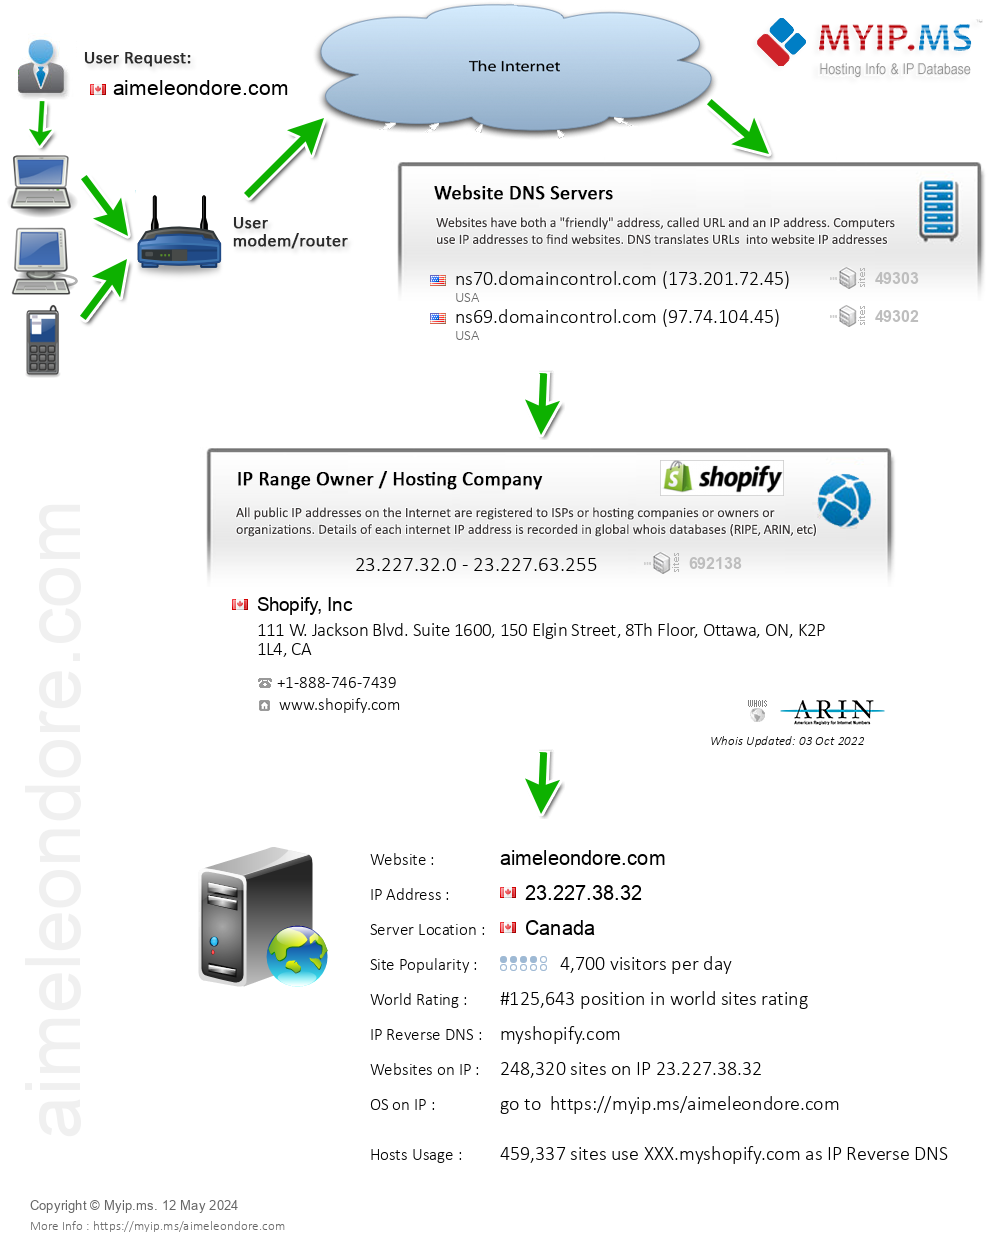 Aimeleondore.com - Website Hosting Visual IP Diagram